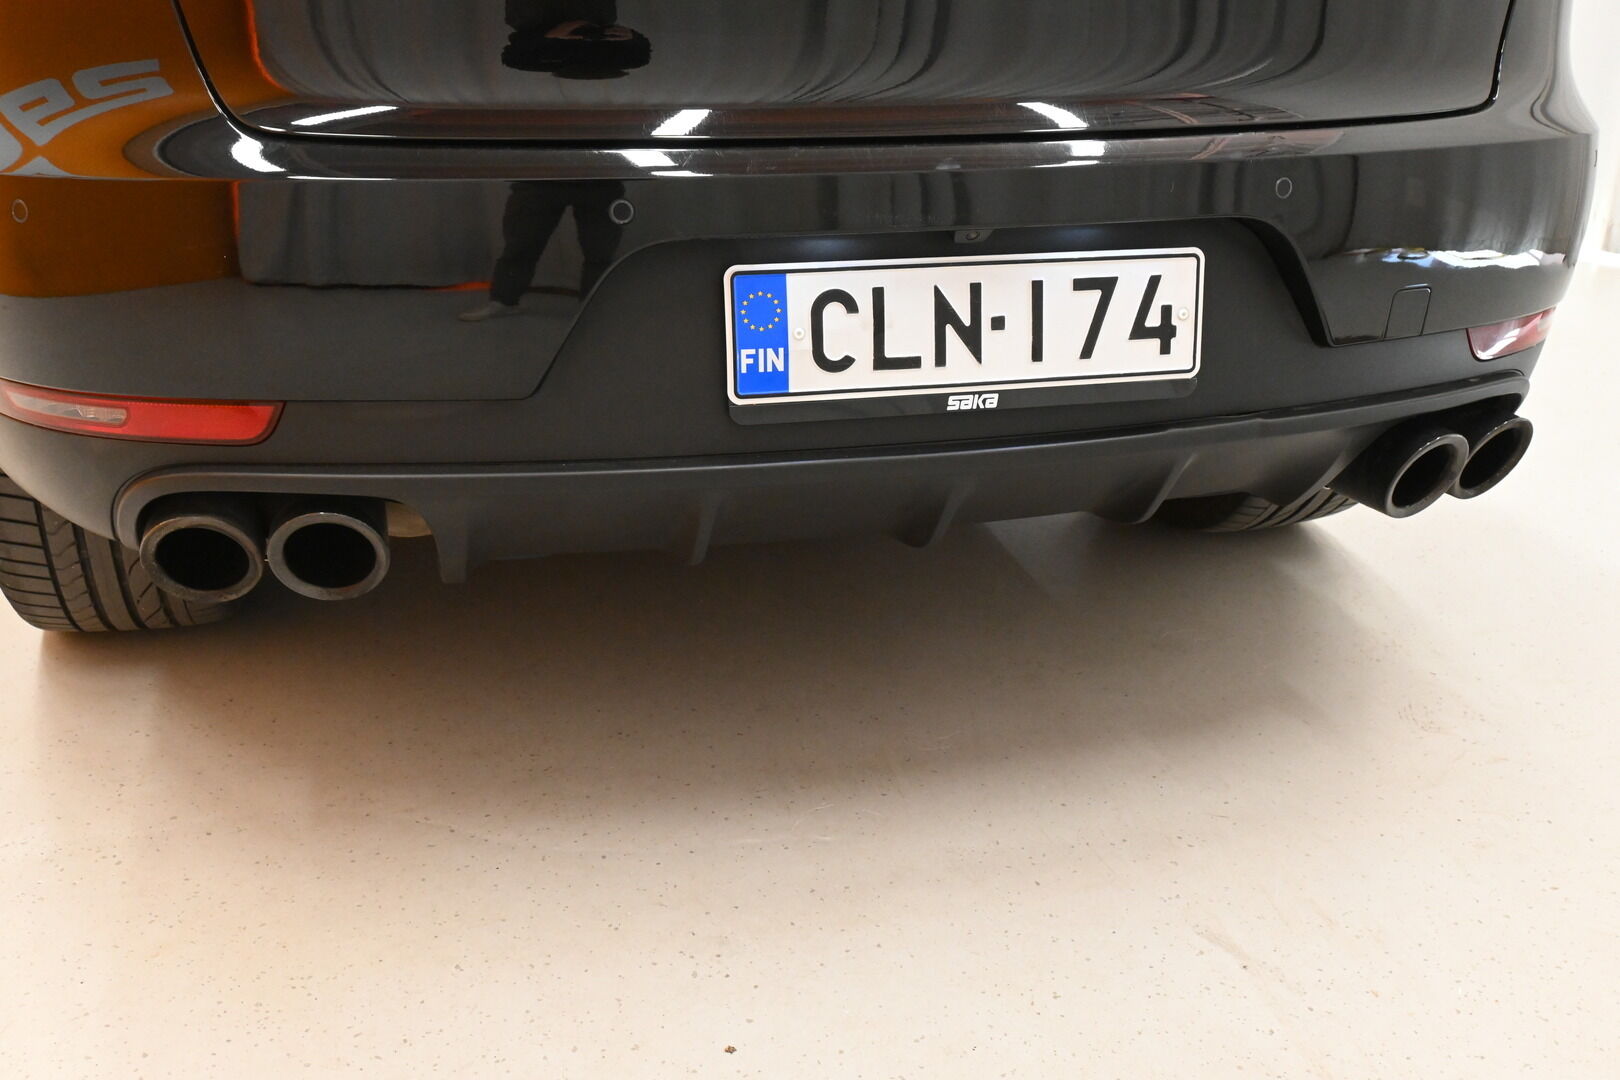 Musta Maastoauto, Porsche Macan – CLN-174